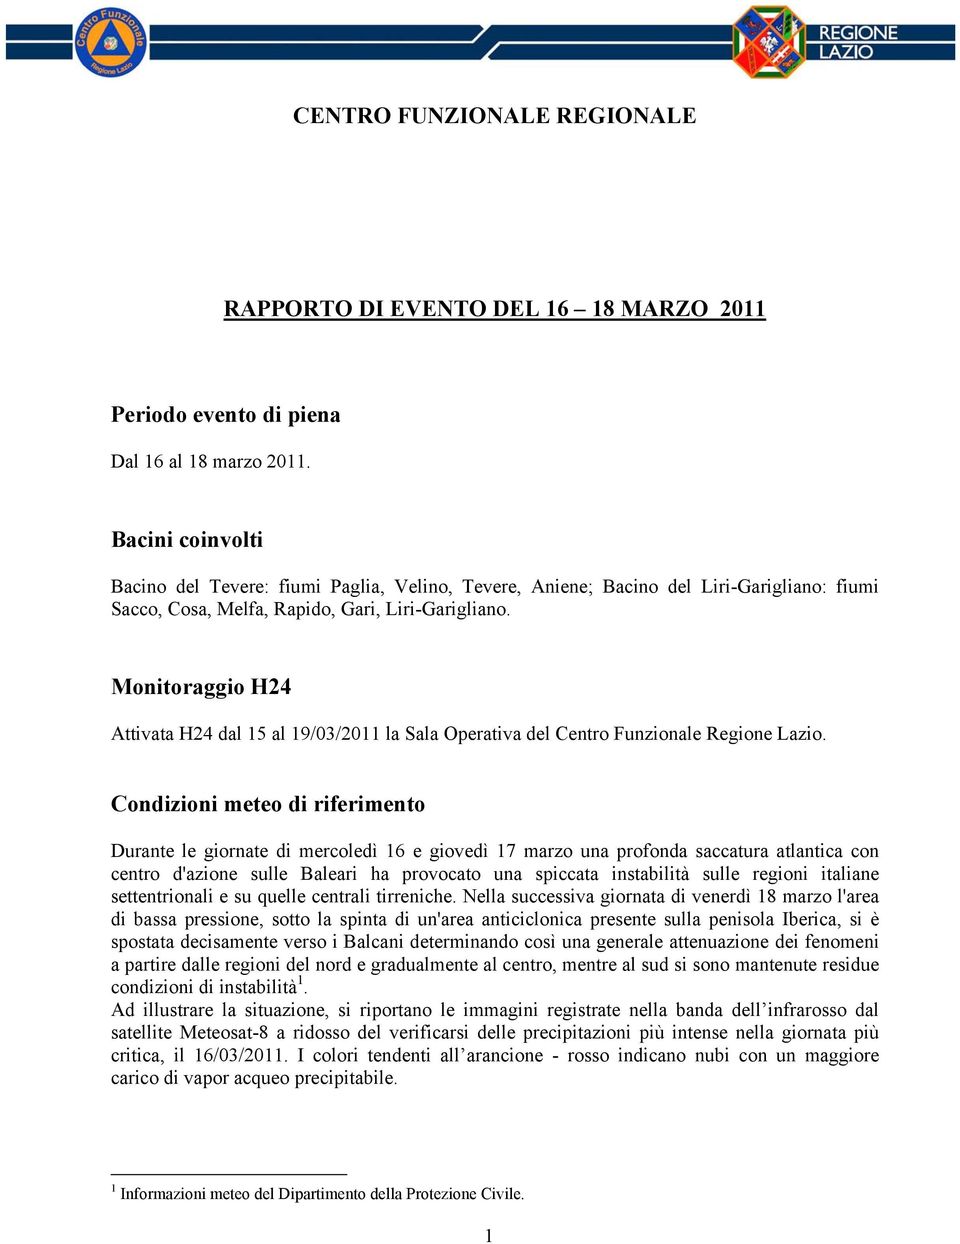 Monitoraggio H24 Attivata H24 dal 15 al 19/03/2011 la Sala Operativa del Centro Funzionale Regione Lazio.